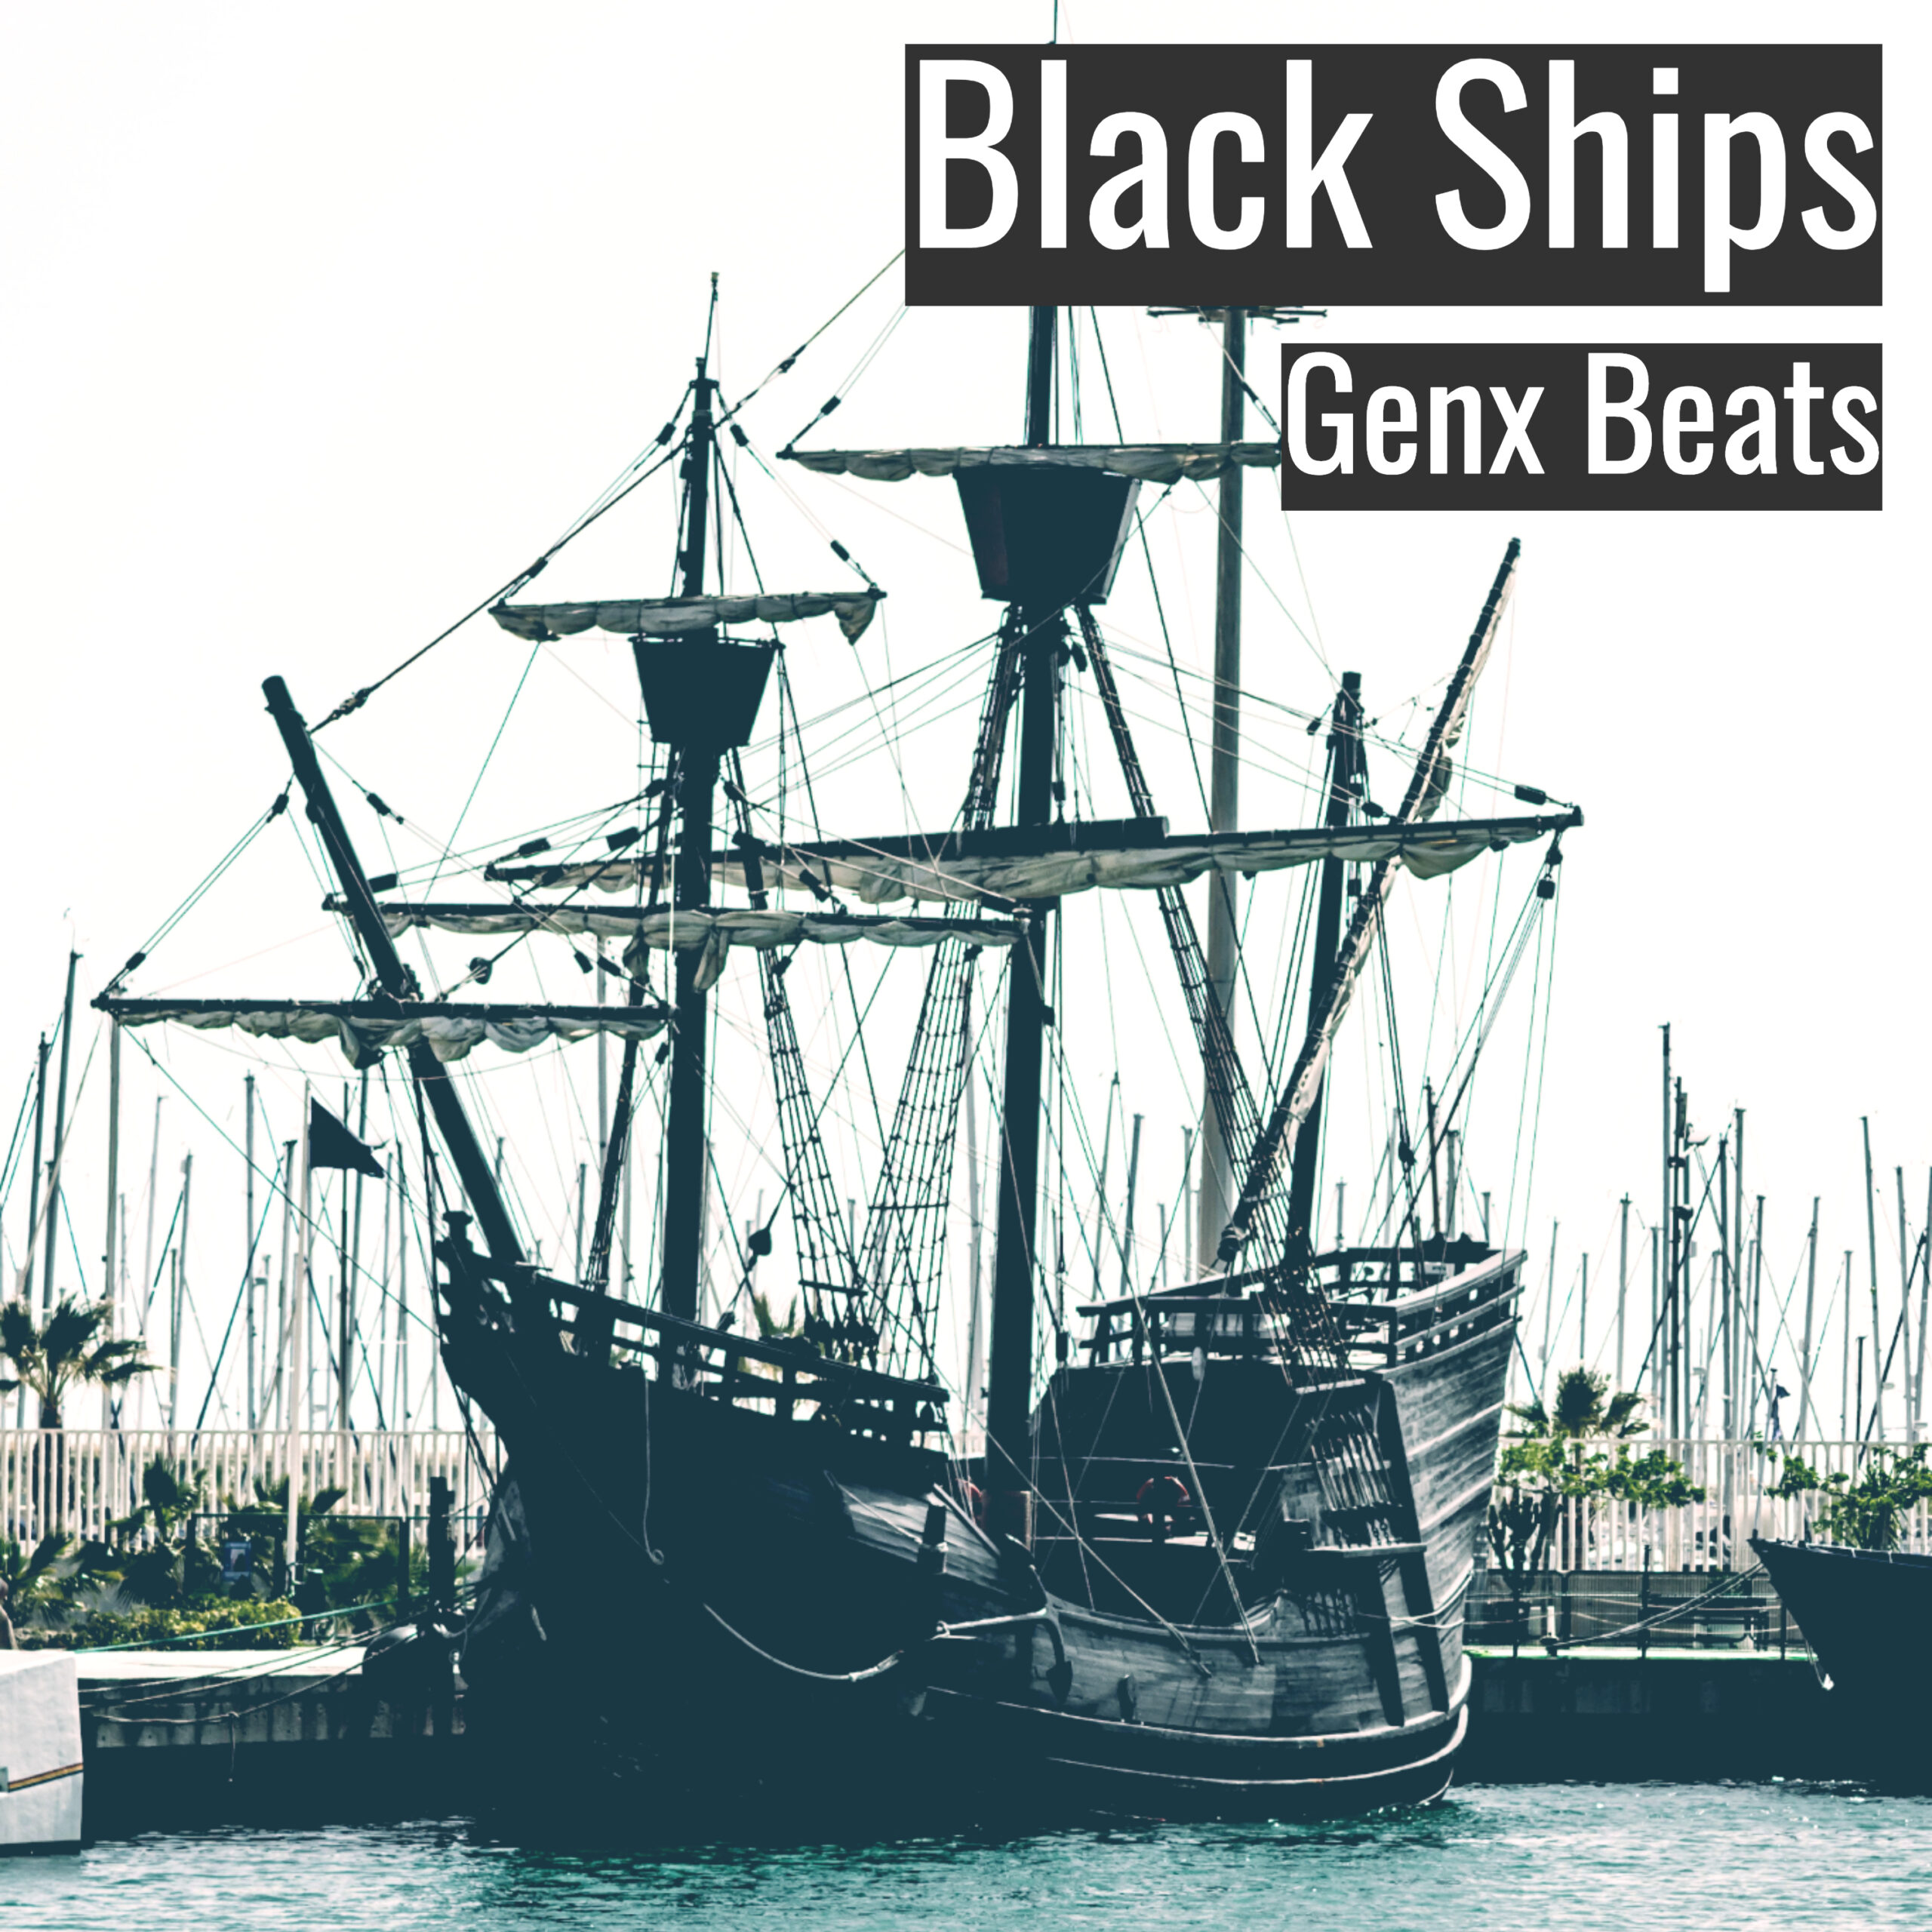 Black Ships scaled